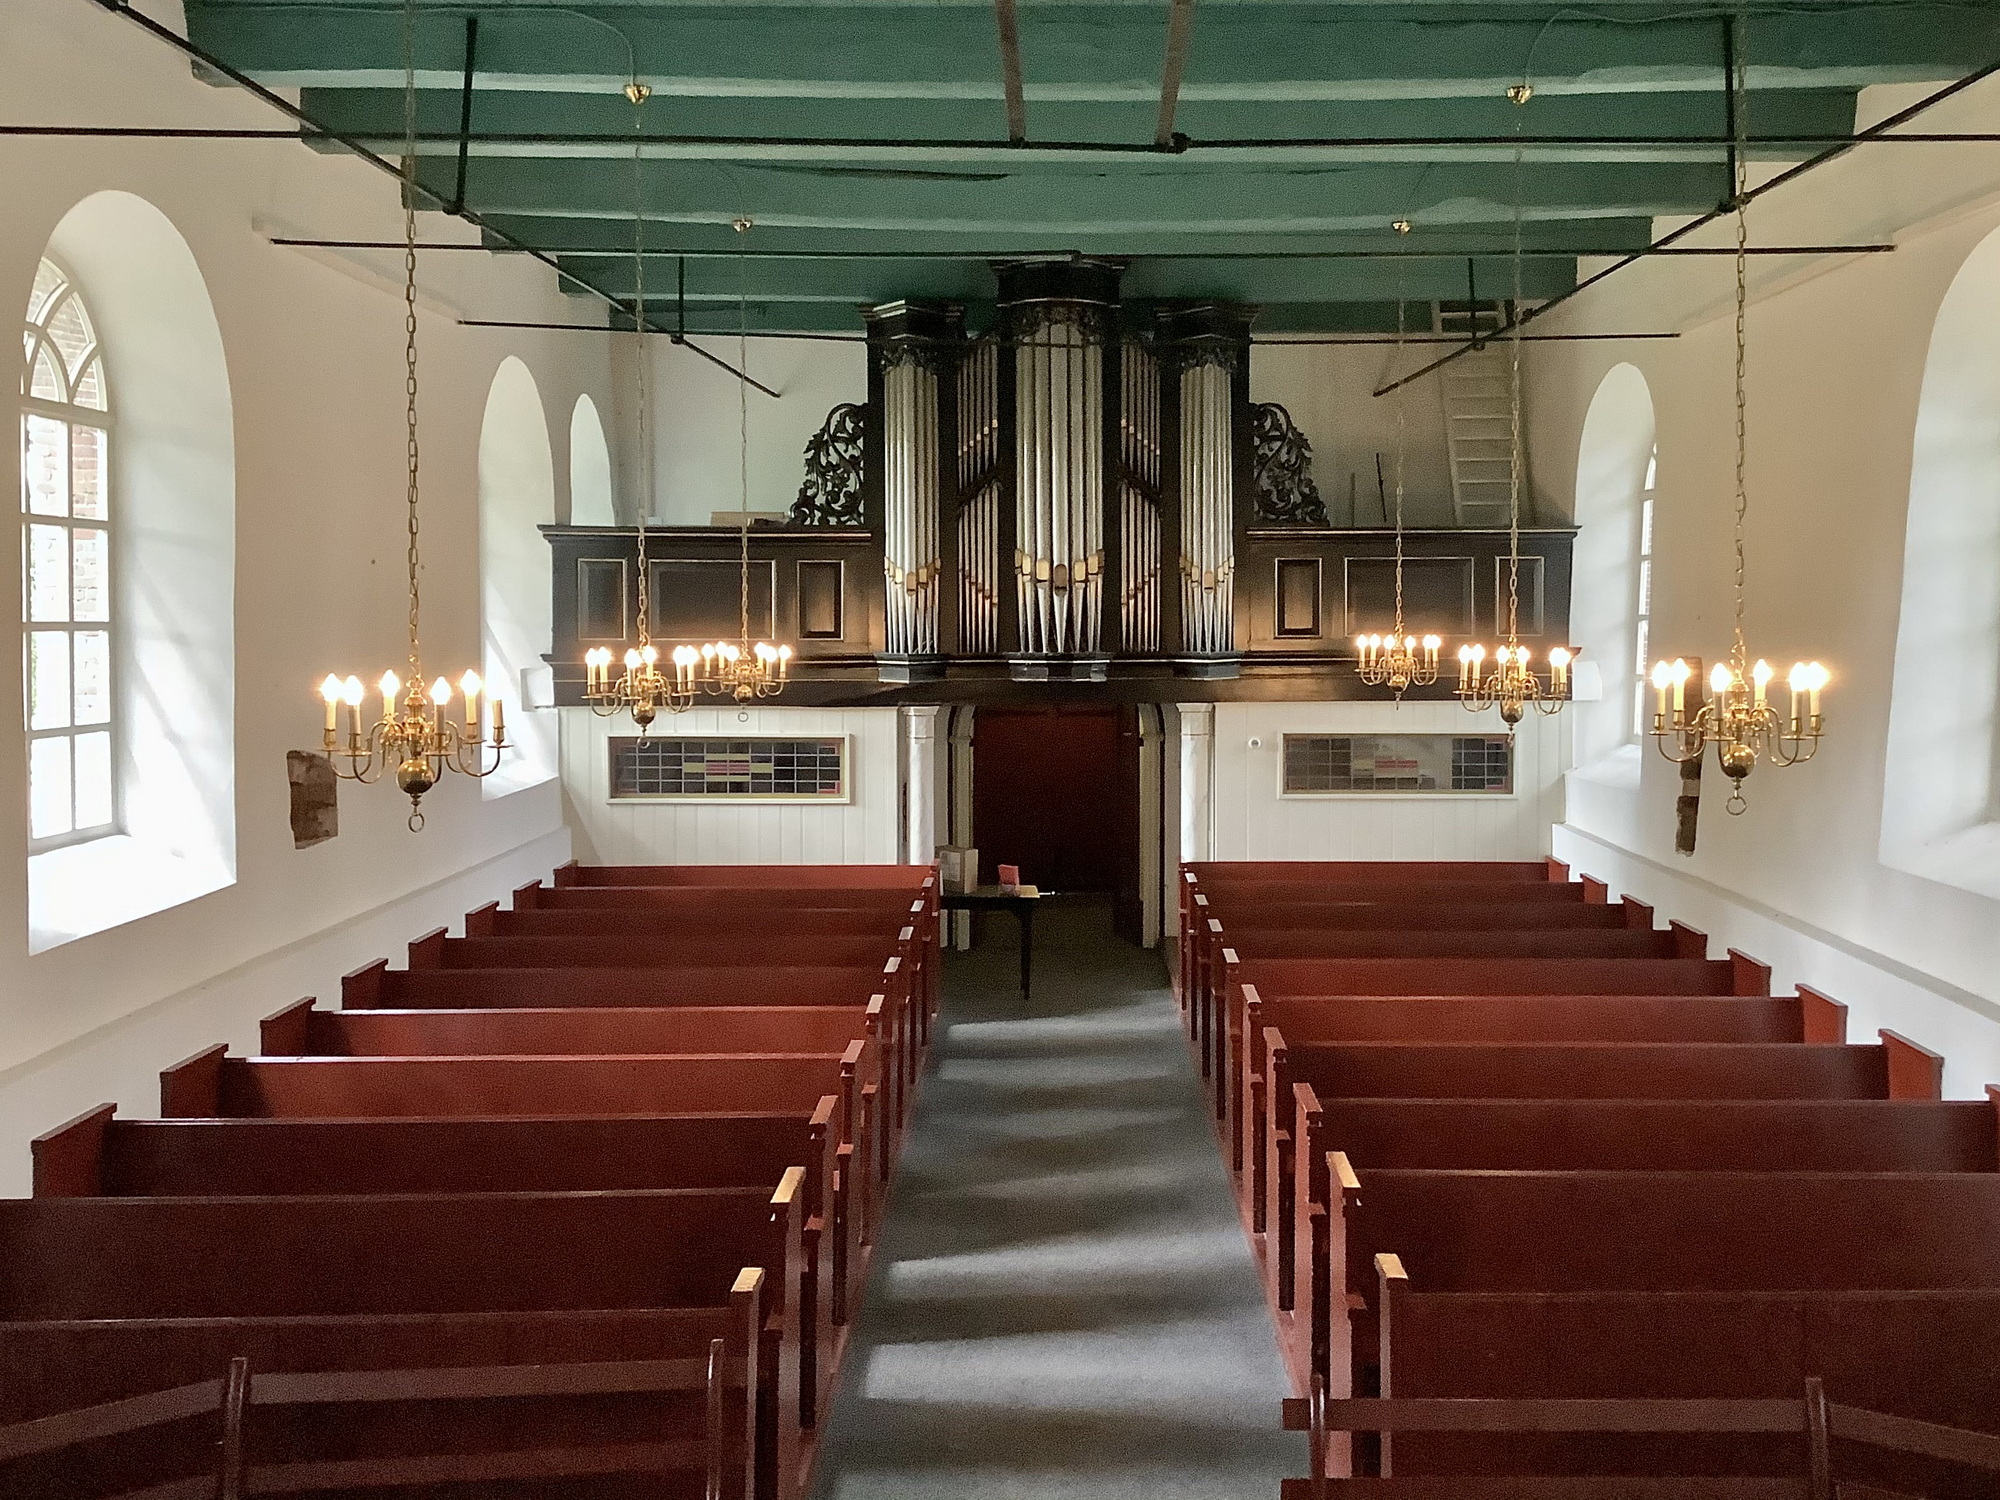 Interieur naar het westen met het orgel en daaronder de toegangsdeur naar de kerk. Foto: ©Jur Kuipers.